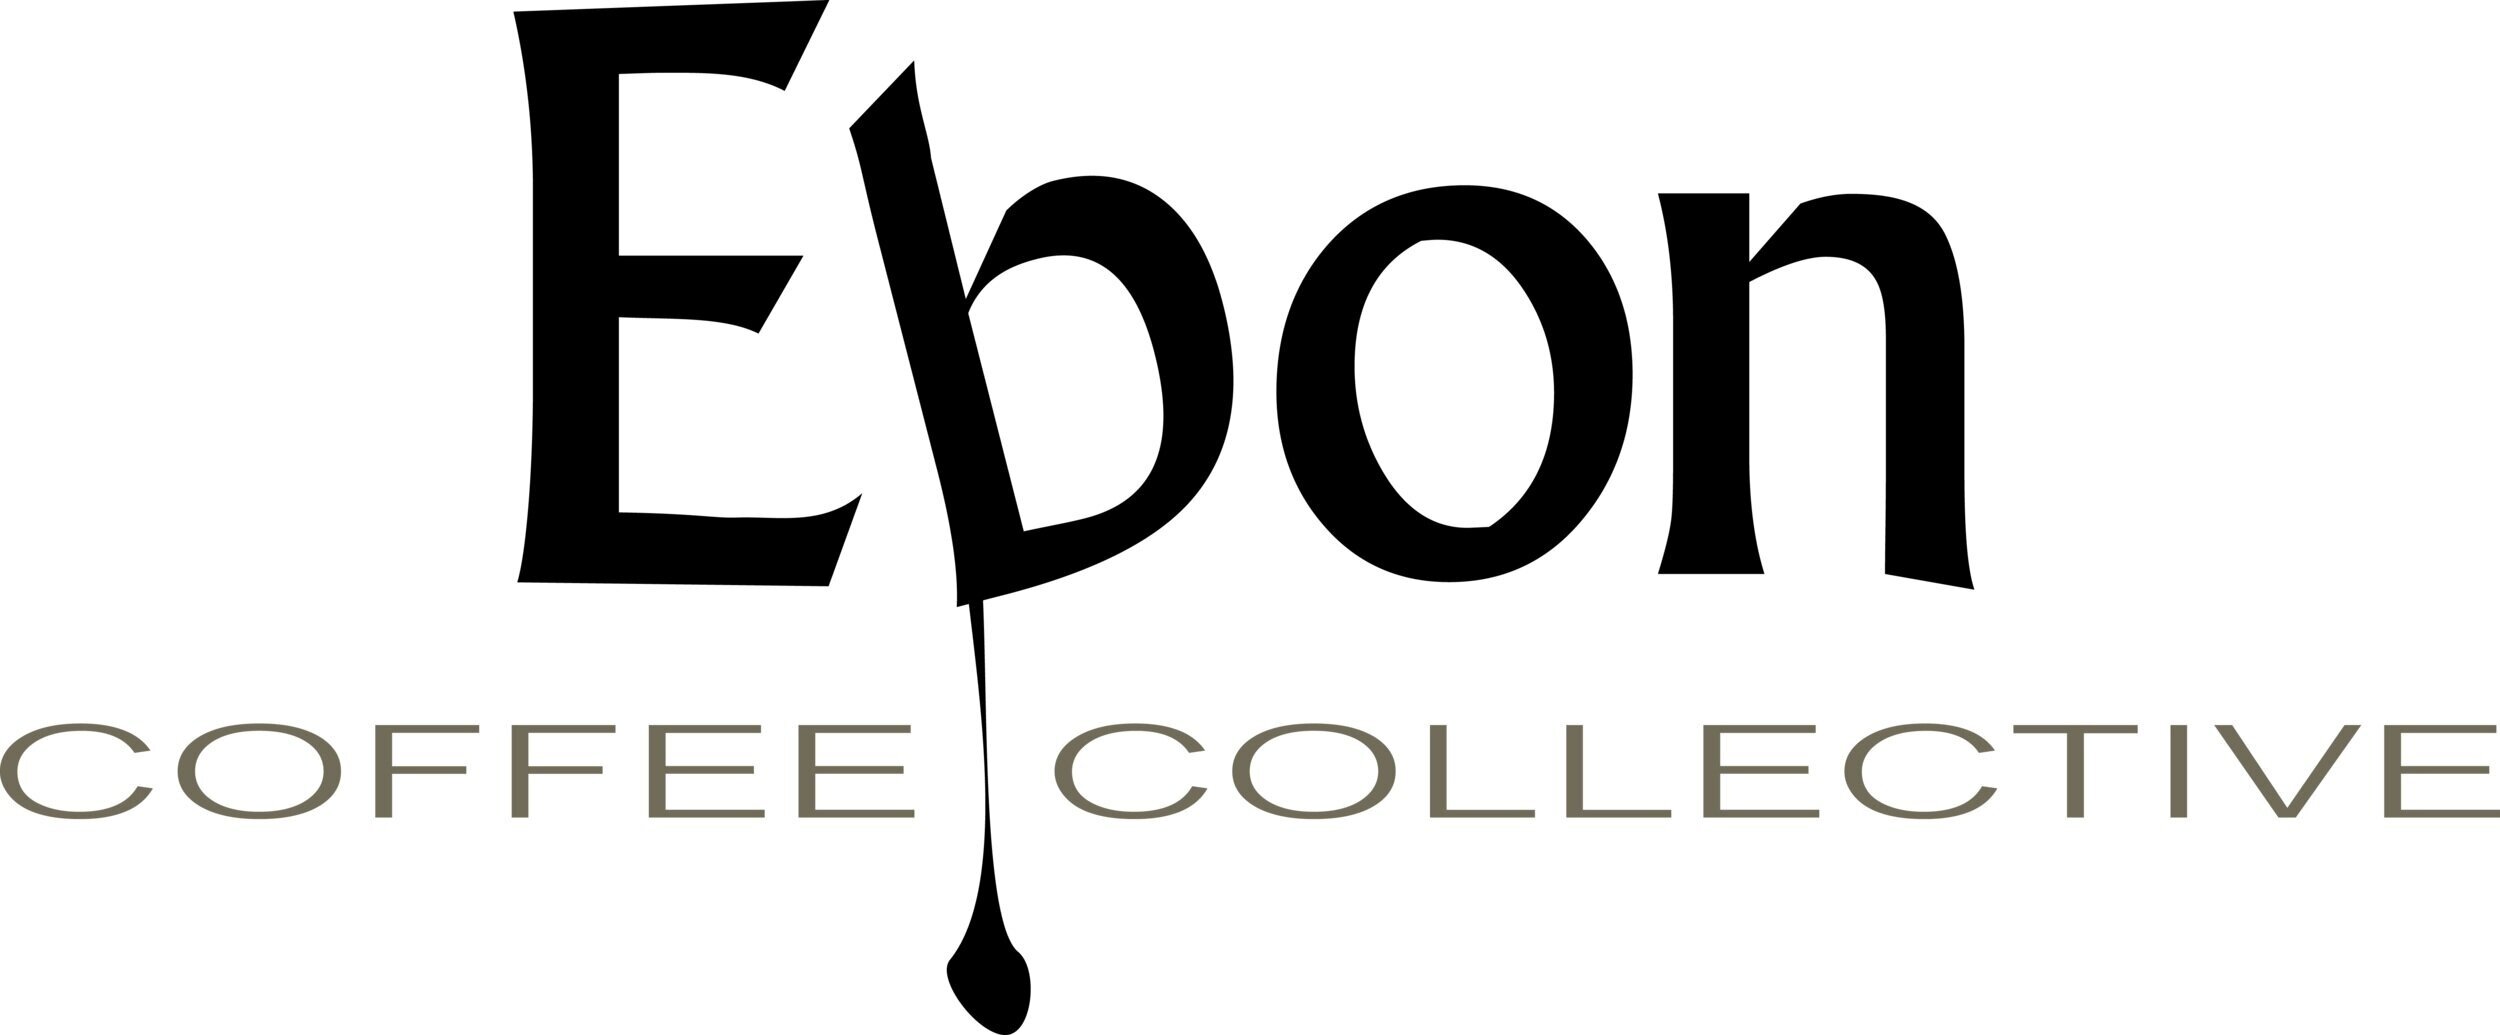 Ebon Coffee Collective